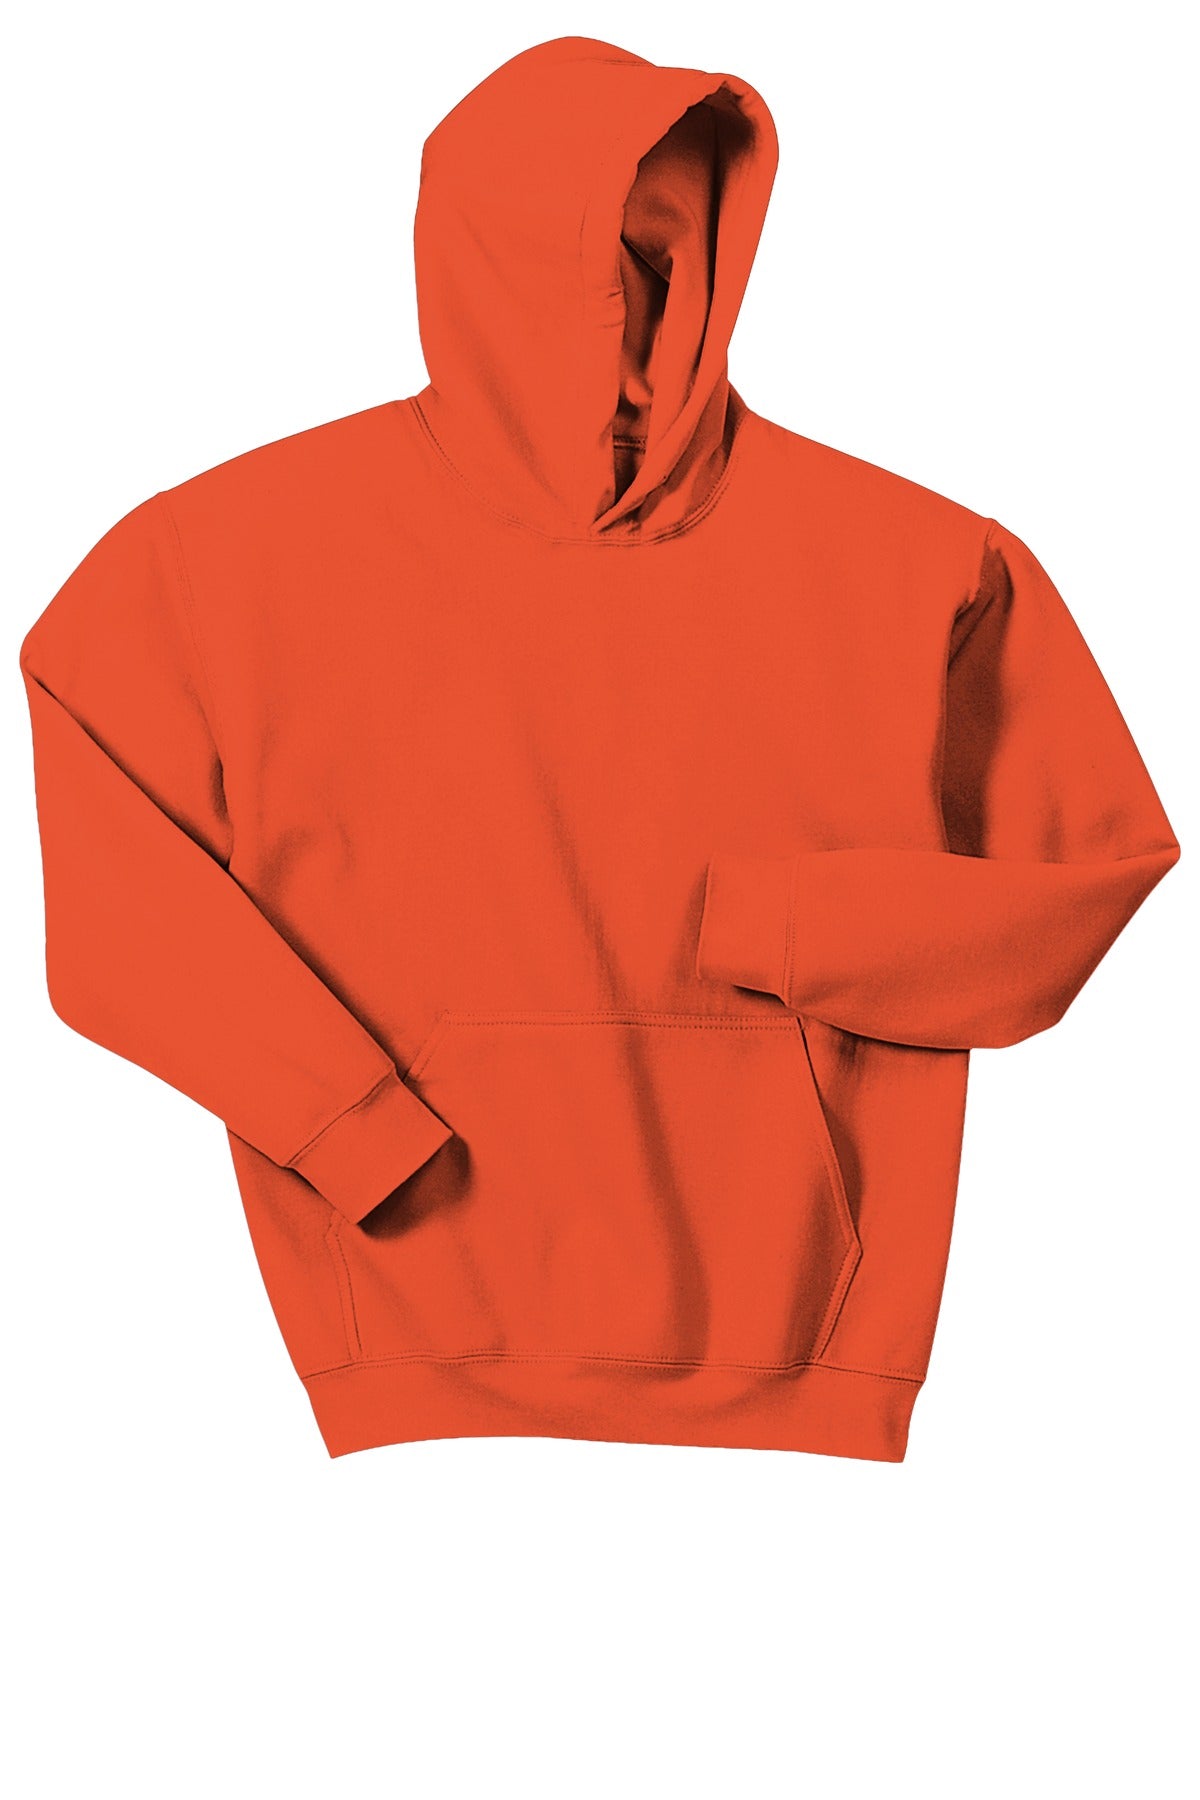 Gone RogueGildan® - Youth Heavy Blend™ Hooded Sweatshirt. 18500B Logo #2